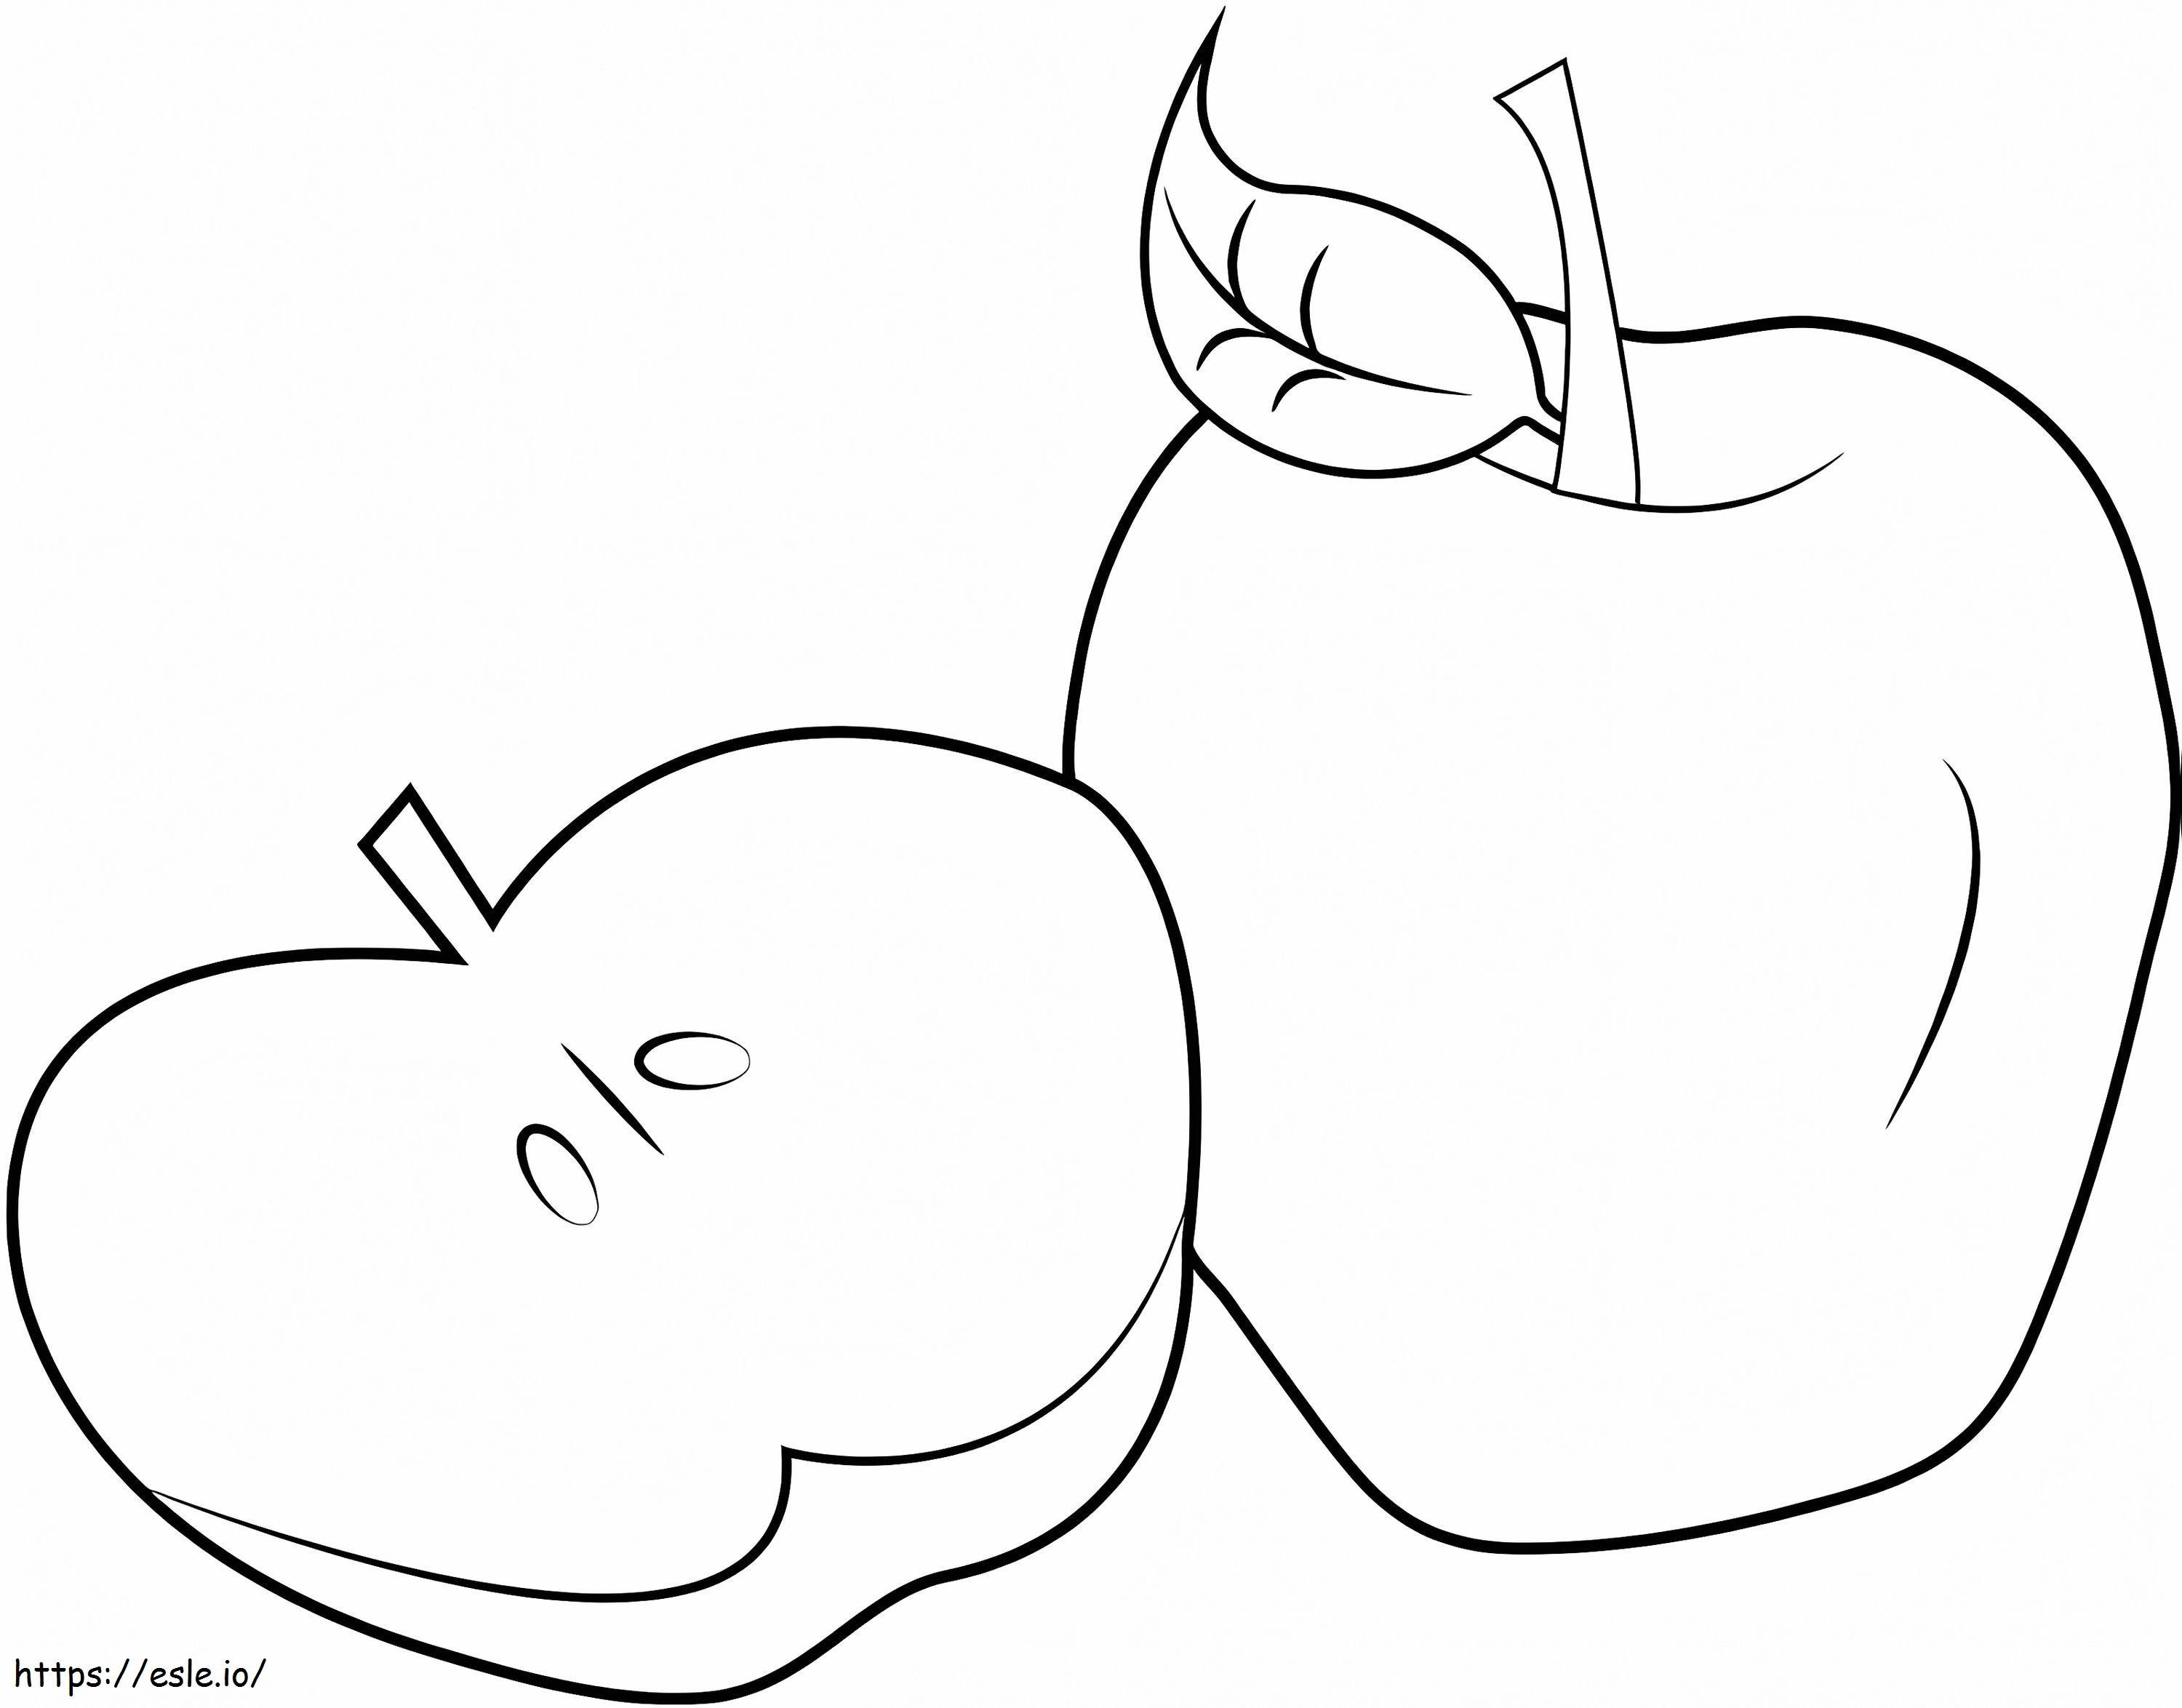 Geschnittener Apfel und ein Apfel ausmalbilder